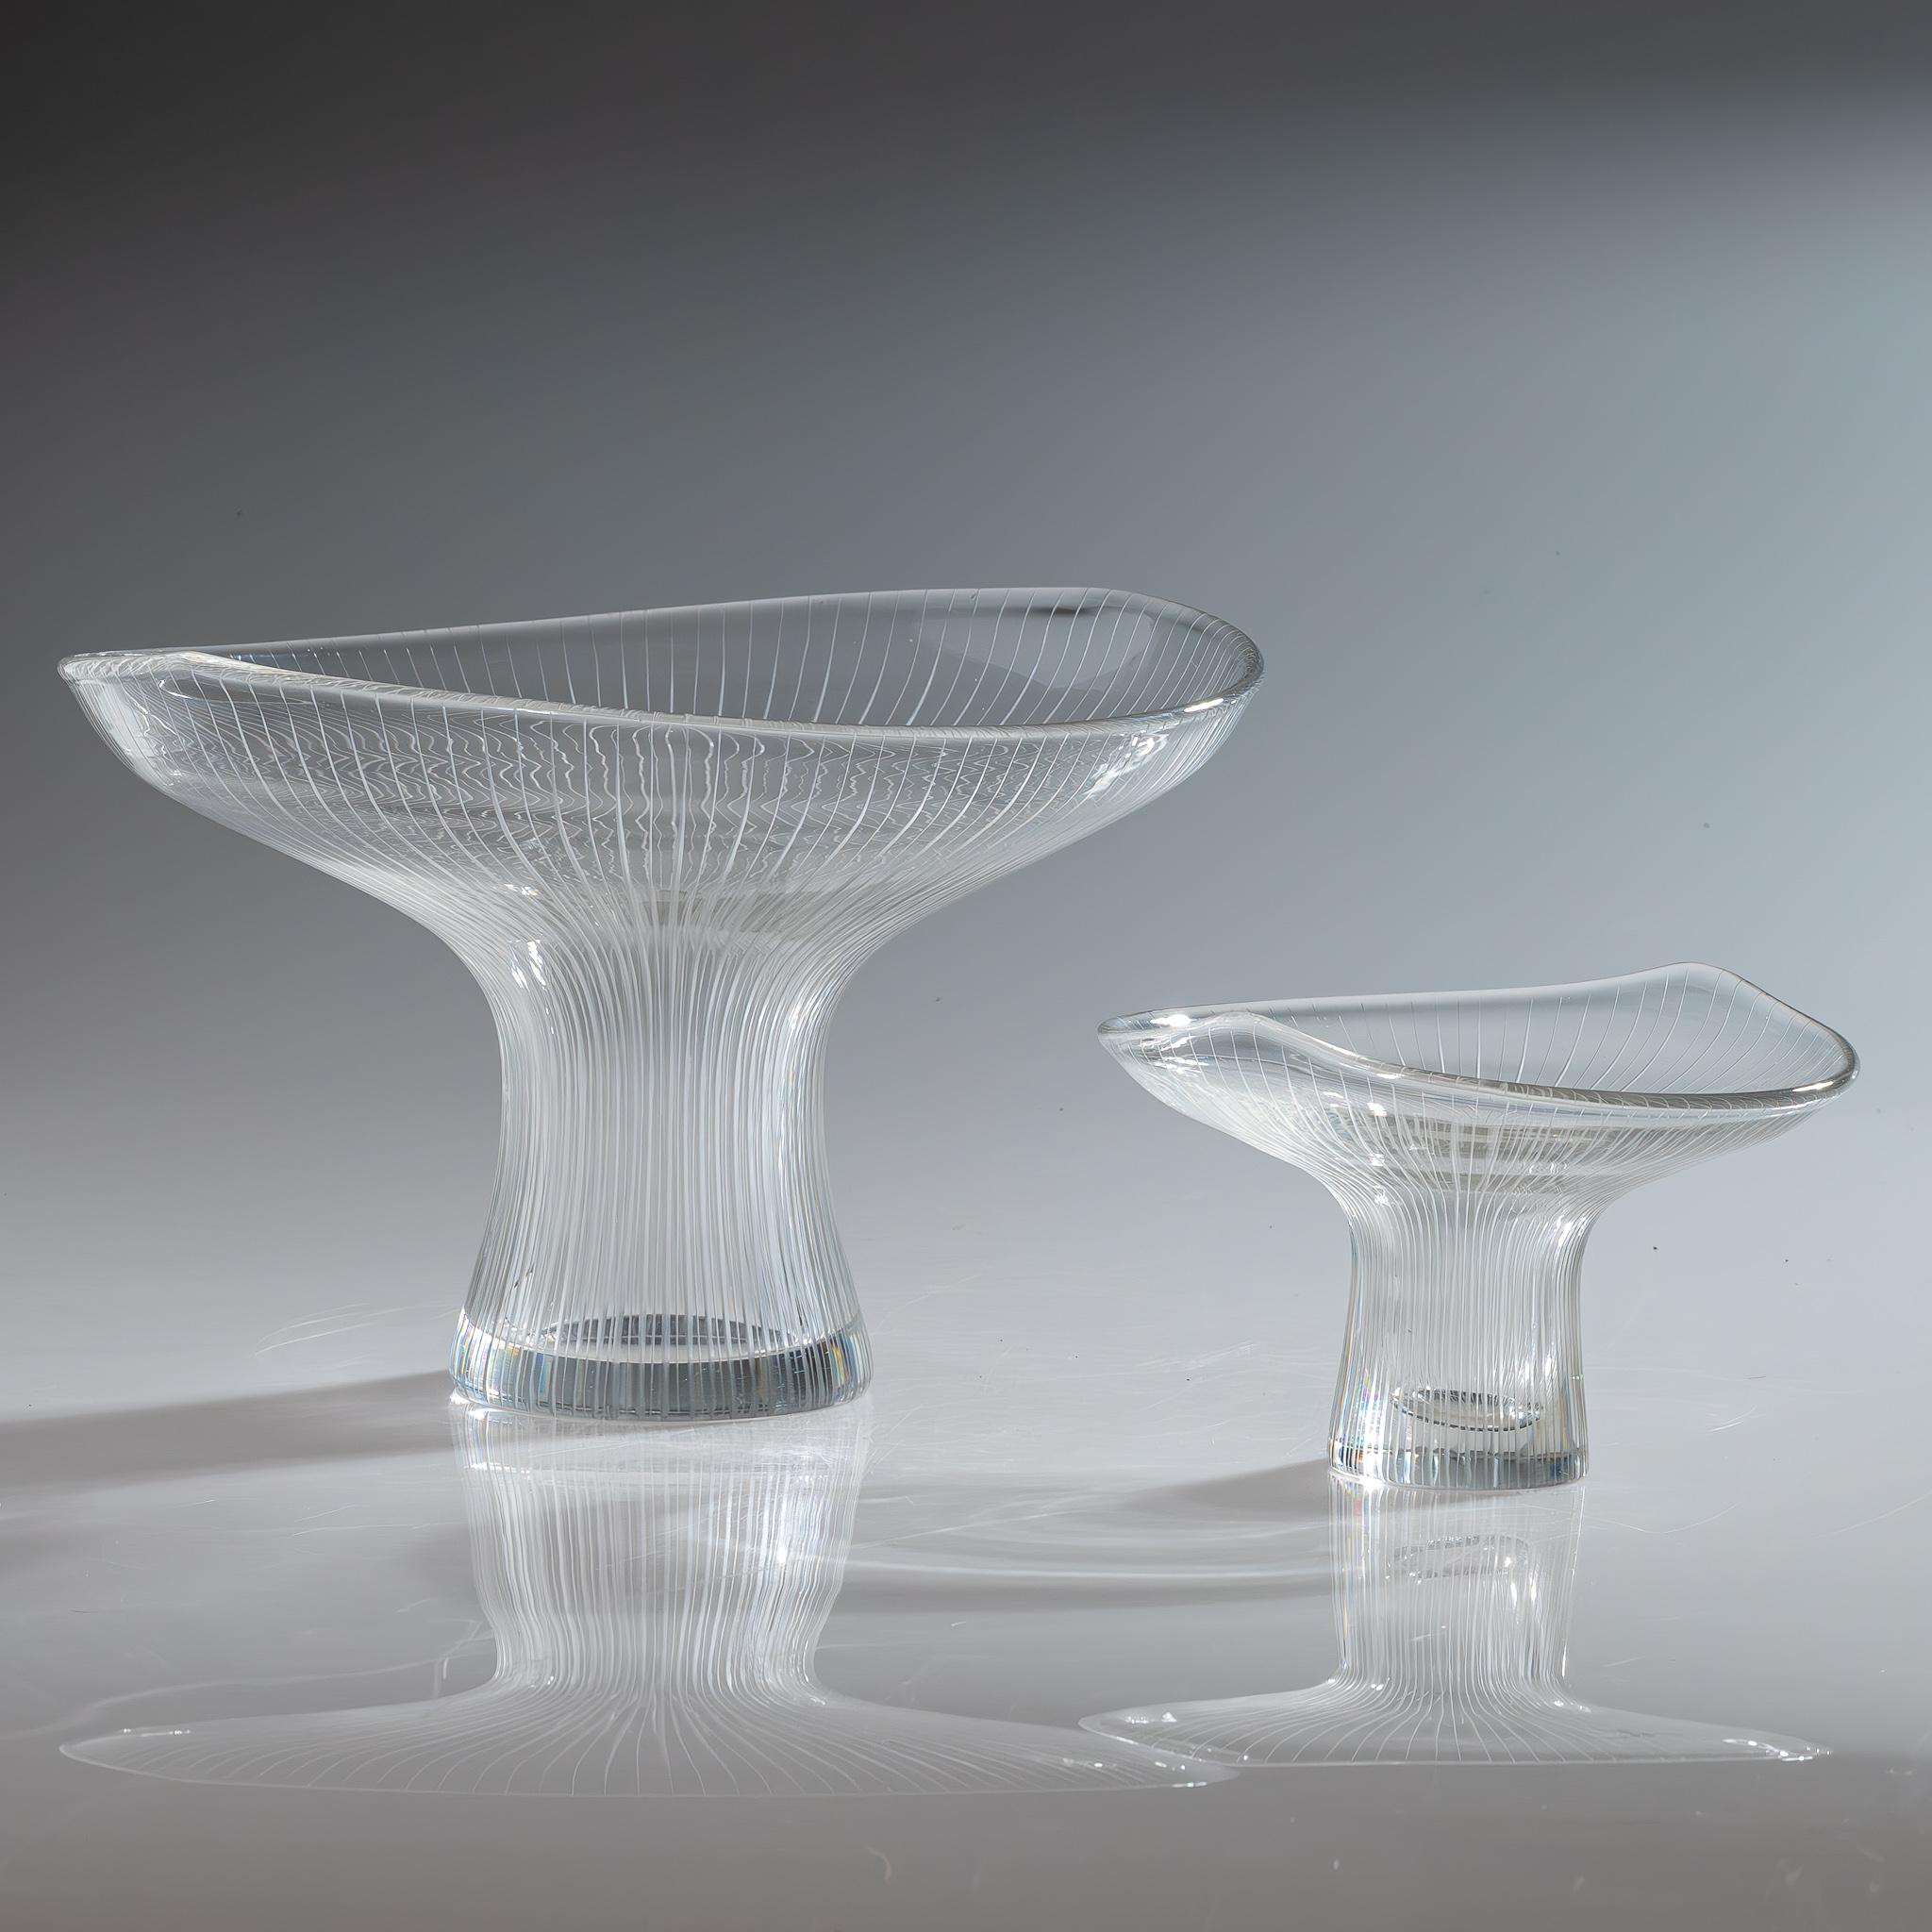 The Modern Scandinavian Tapio Wirkkala Two Line Cut Crystal Art vases Handblown

Un ensemble complet d'objets d'art / vases en cristal soufflé avec des lignes de coupe verticales, modèle 3523. Conçu en 1947 par Tapio Wirkkala, exécuté par la